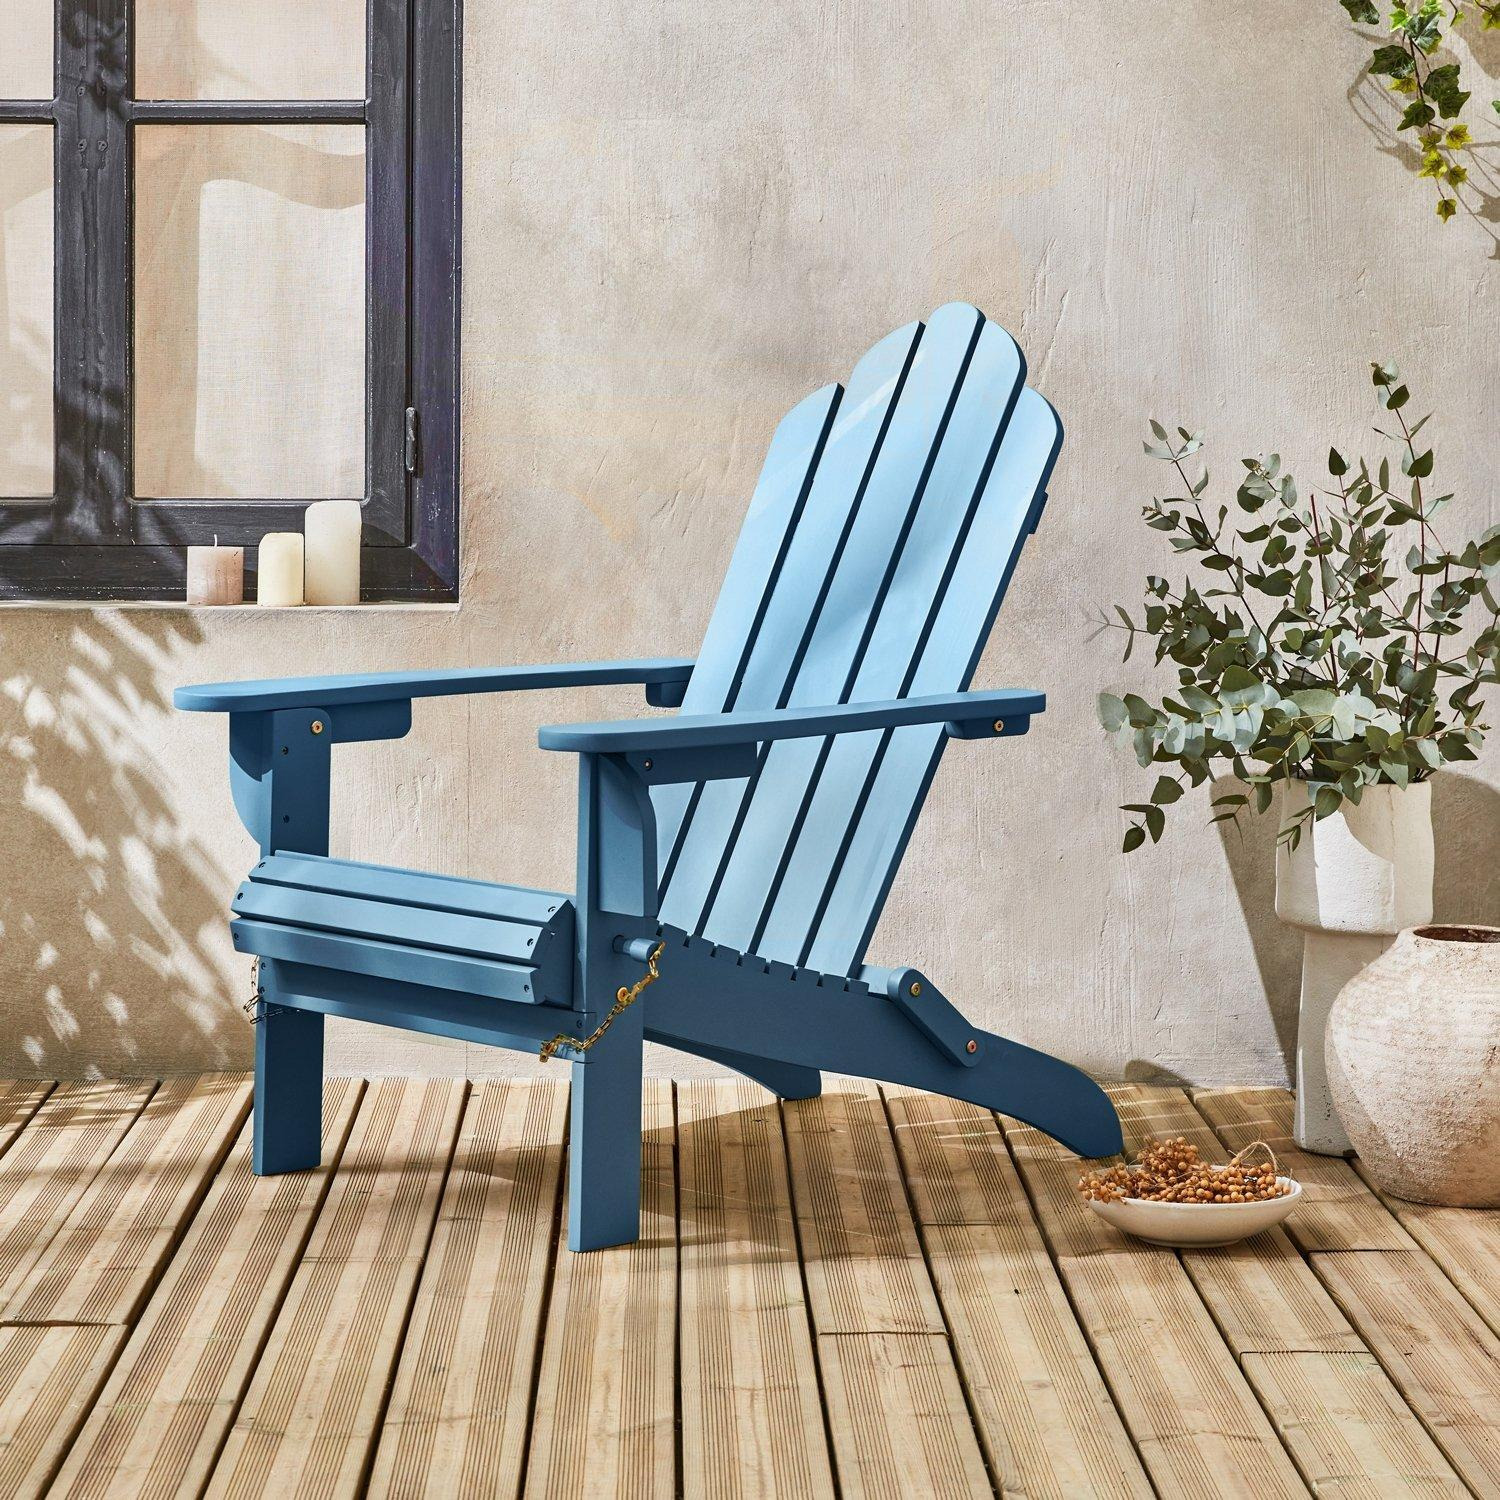 Foldable Wooden Retro Garden Armchair - image 1